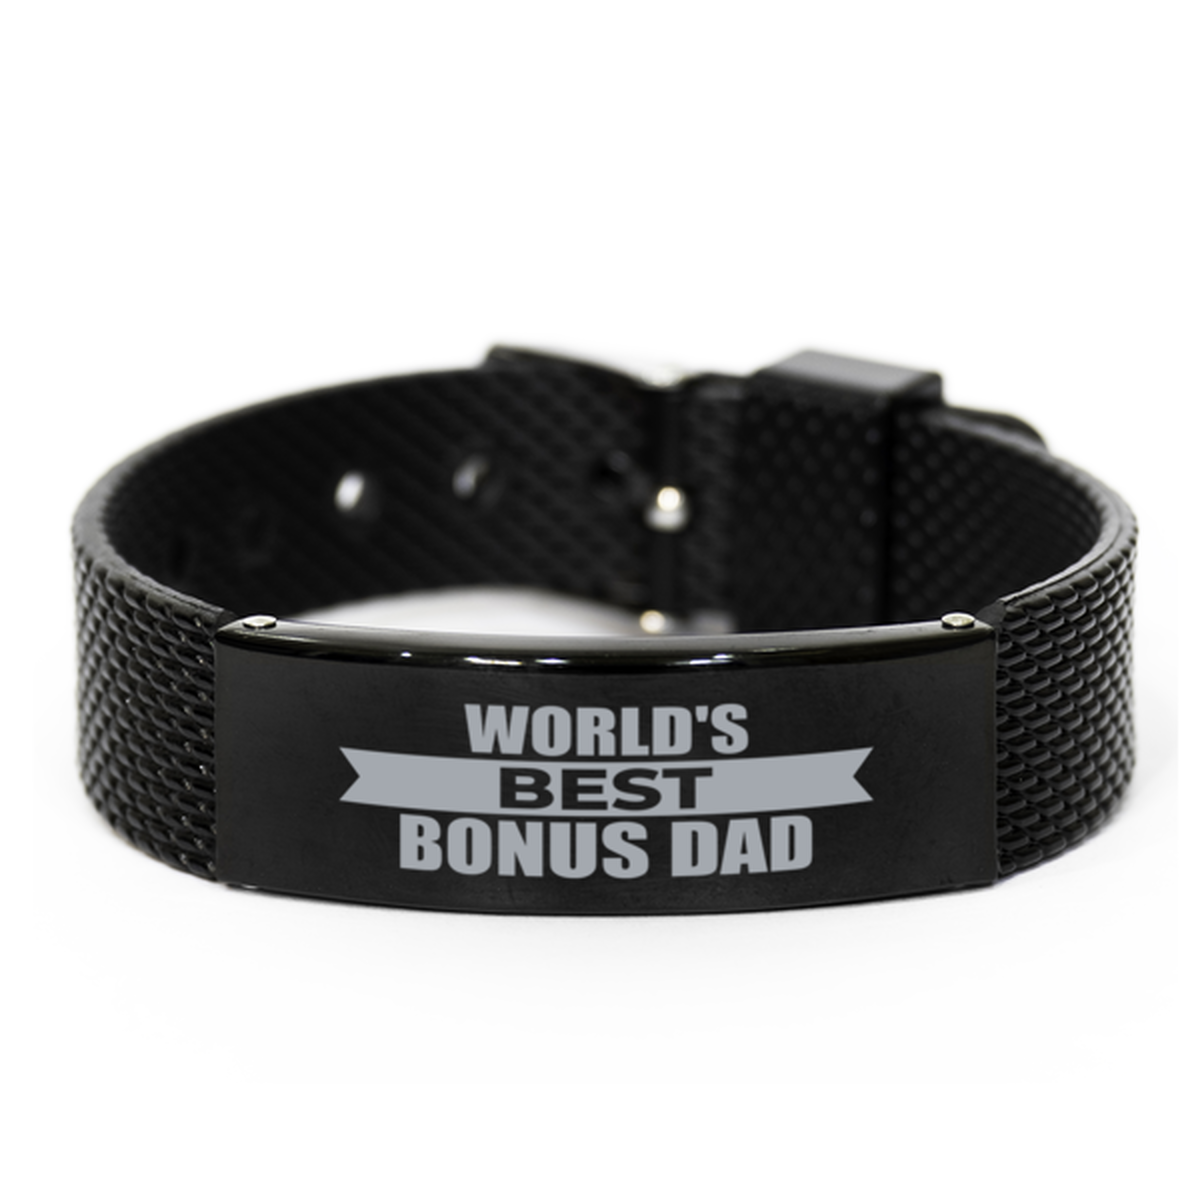 World's Best Bonus Dad Gifts, Gag Engraved Bracelet For Bonus Dad, Best Family Gifts For Men